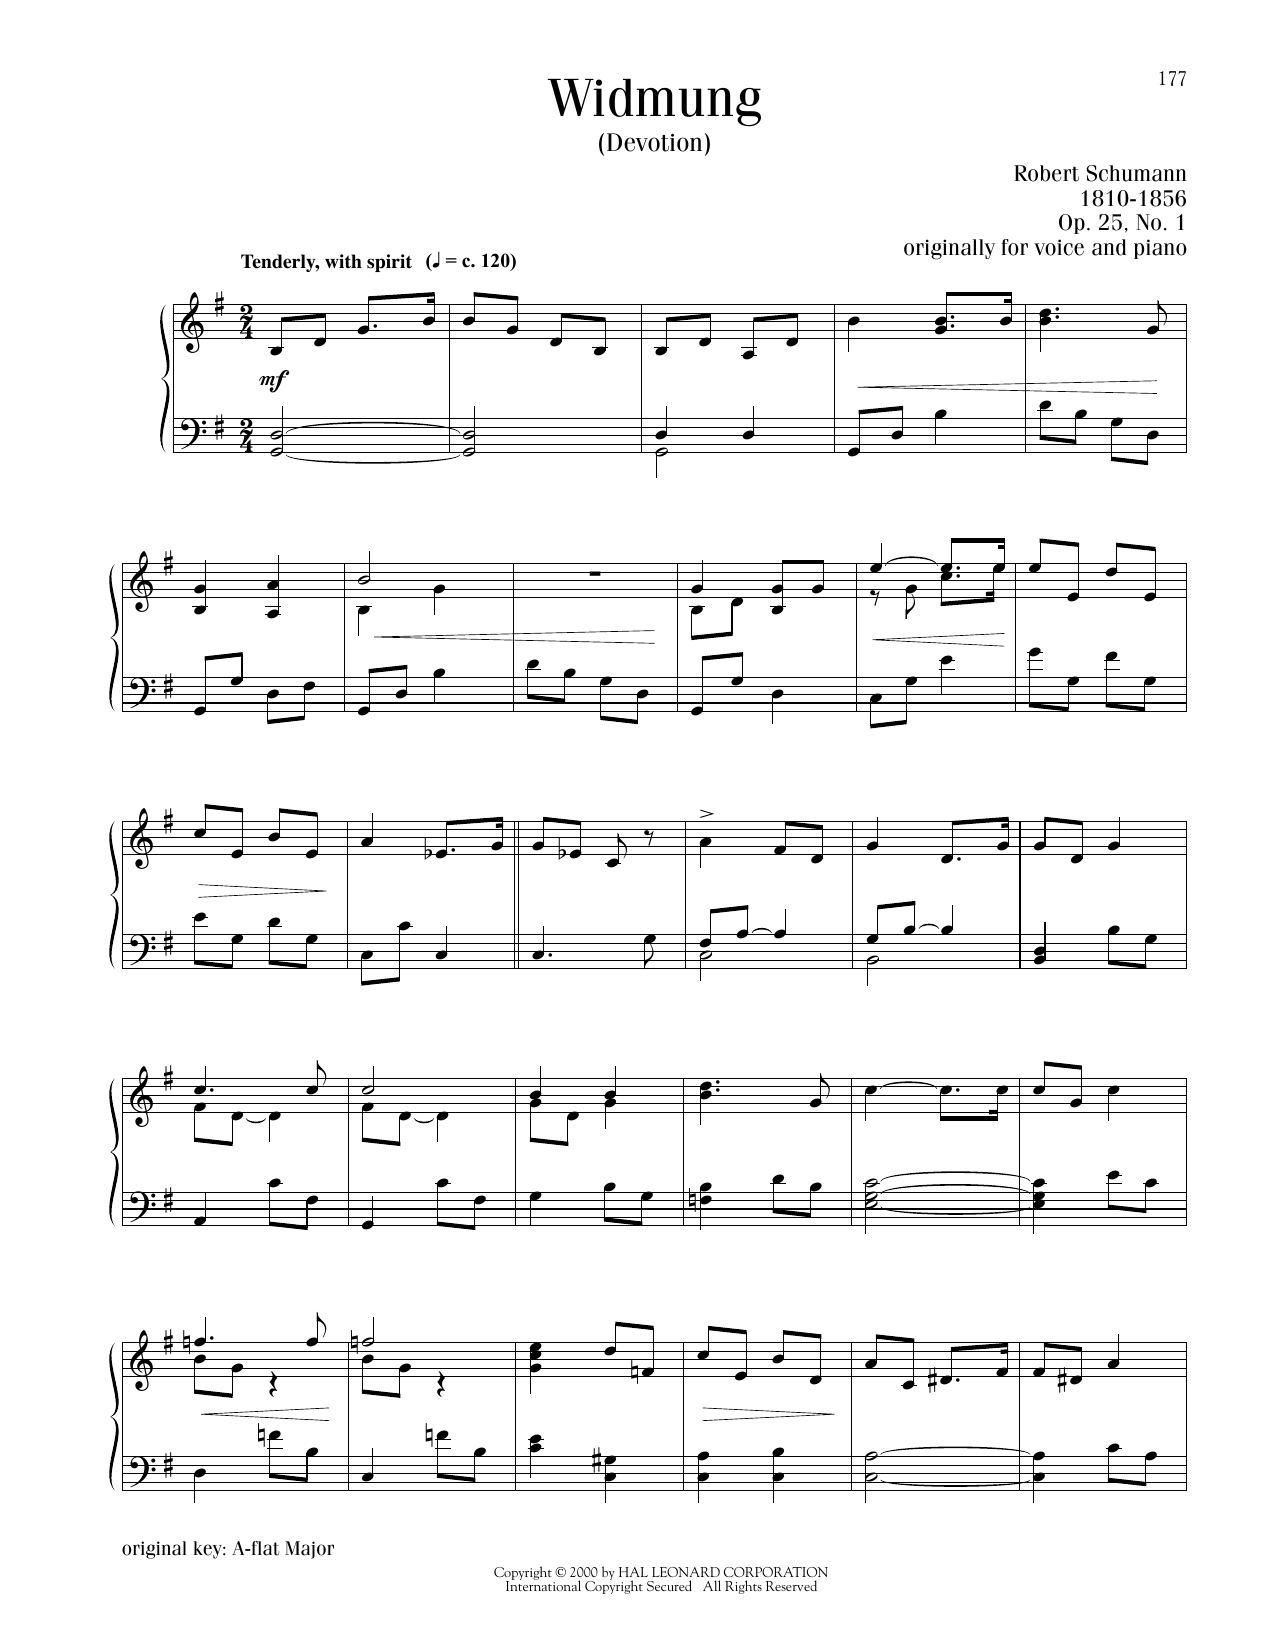 Robert Schumann Widmung sheet music notes printable PDF score